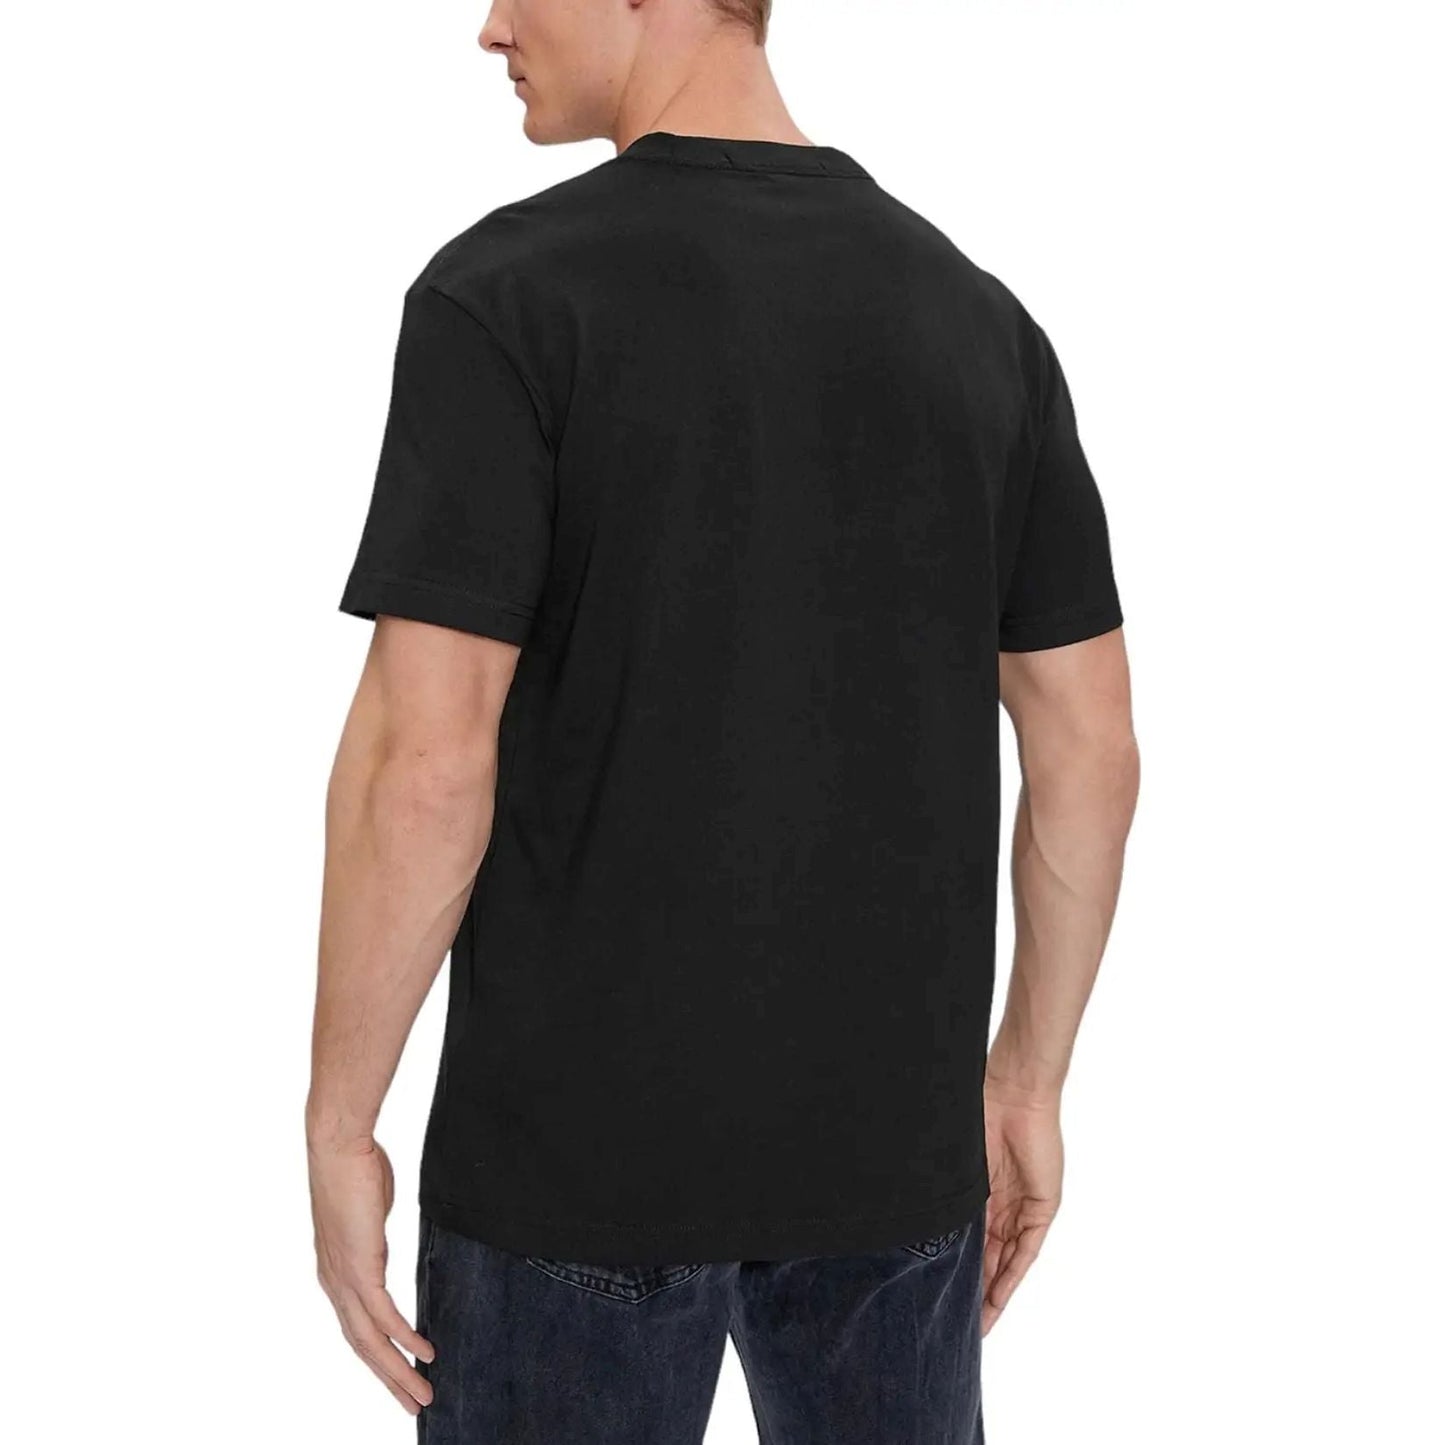 CALVIN KLEIN JEANS marškinėliai trumpomis rankovėmis vyrams, Juoda, S/s t-shirt